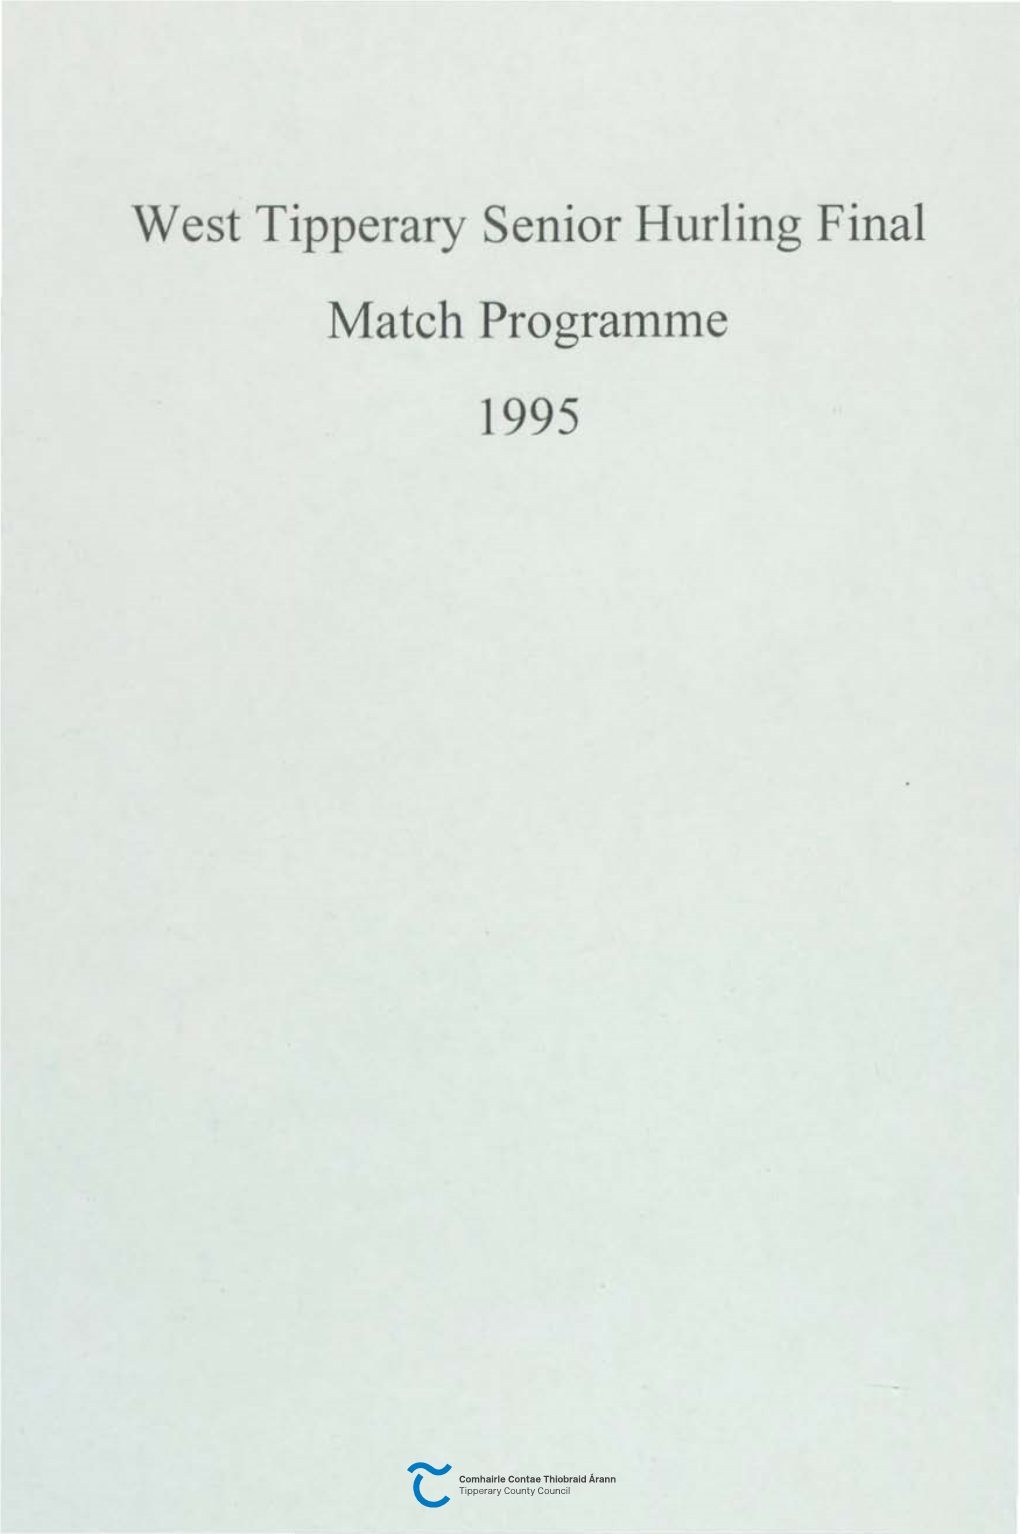 West Tipperary Senior Hurling Final Match Programme 1995